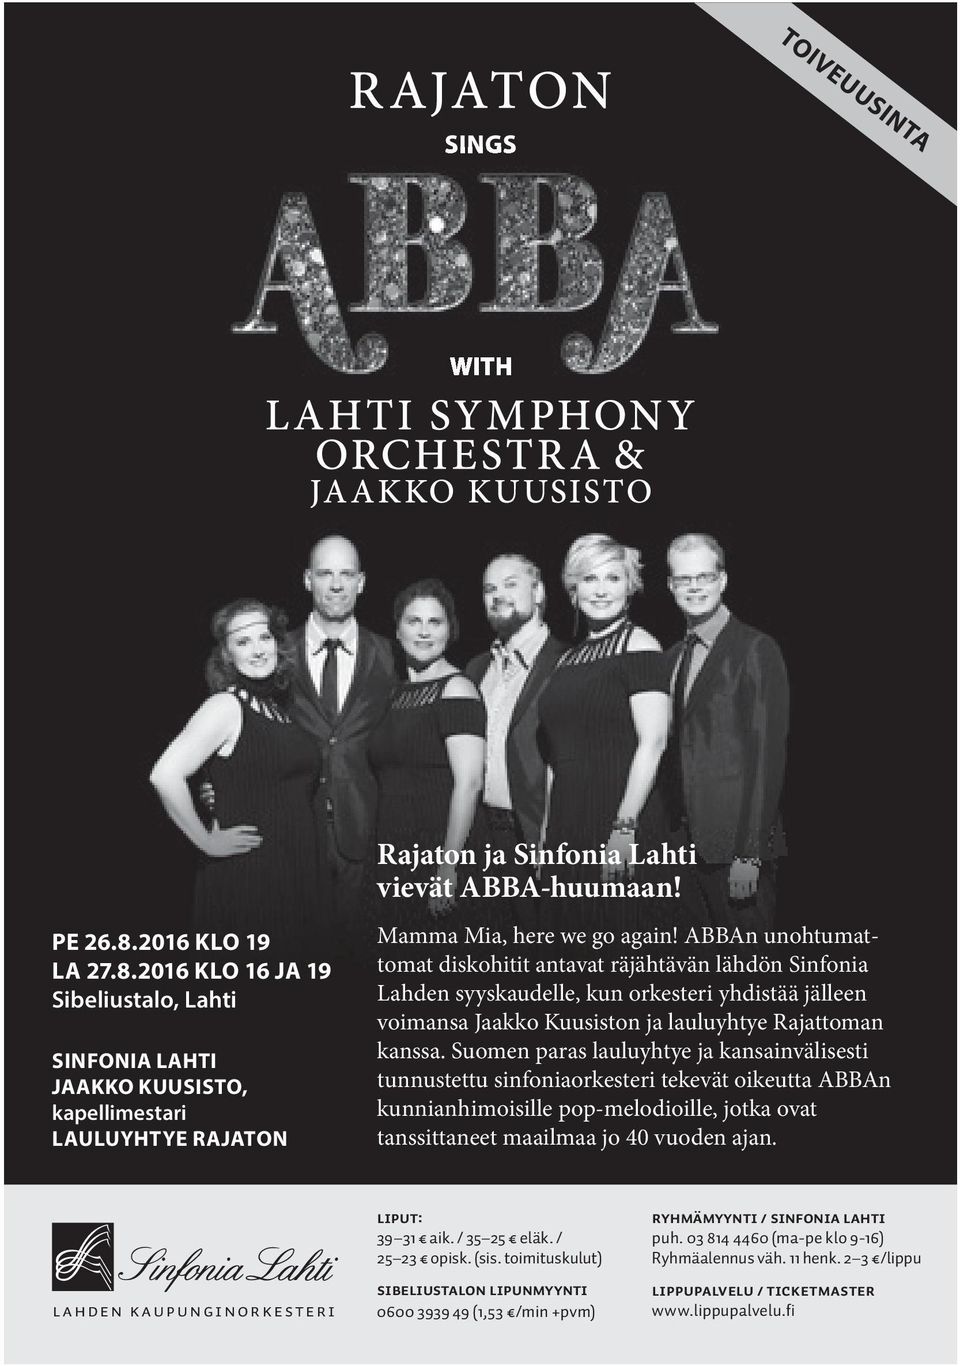 ABBAn unohtumattomat diskohitit antavat räjähtävän lähdön Sinfonia Lahden syyskaudelle, kun orkesteri yhdistää jälleen voimansa Jaakko Kuusiston ja lauluyhtye Rajattoman kanssa.